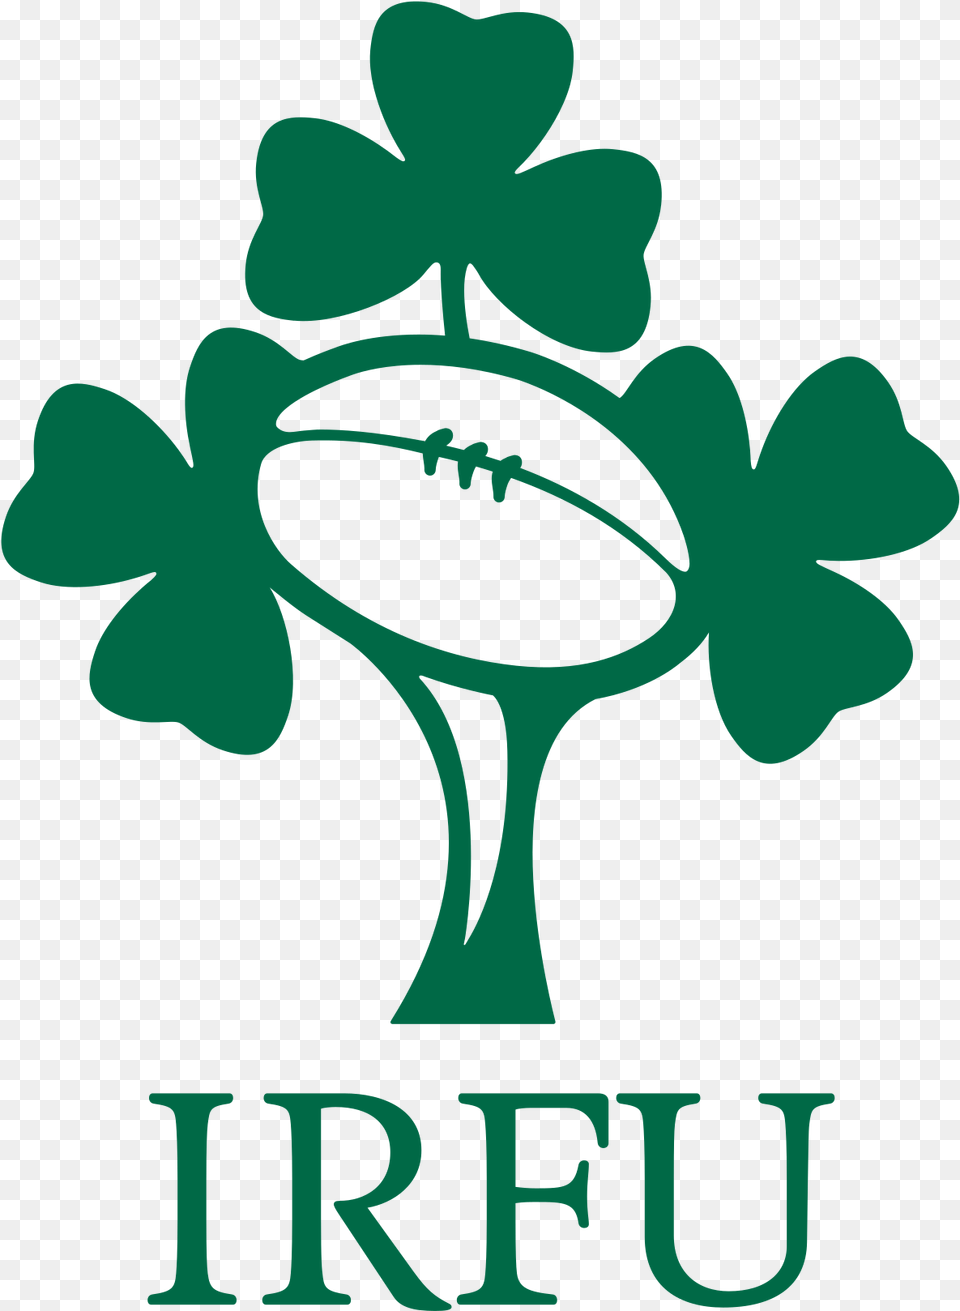 Irish Rugby Logo Png Image